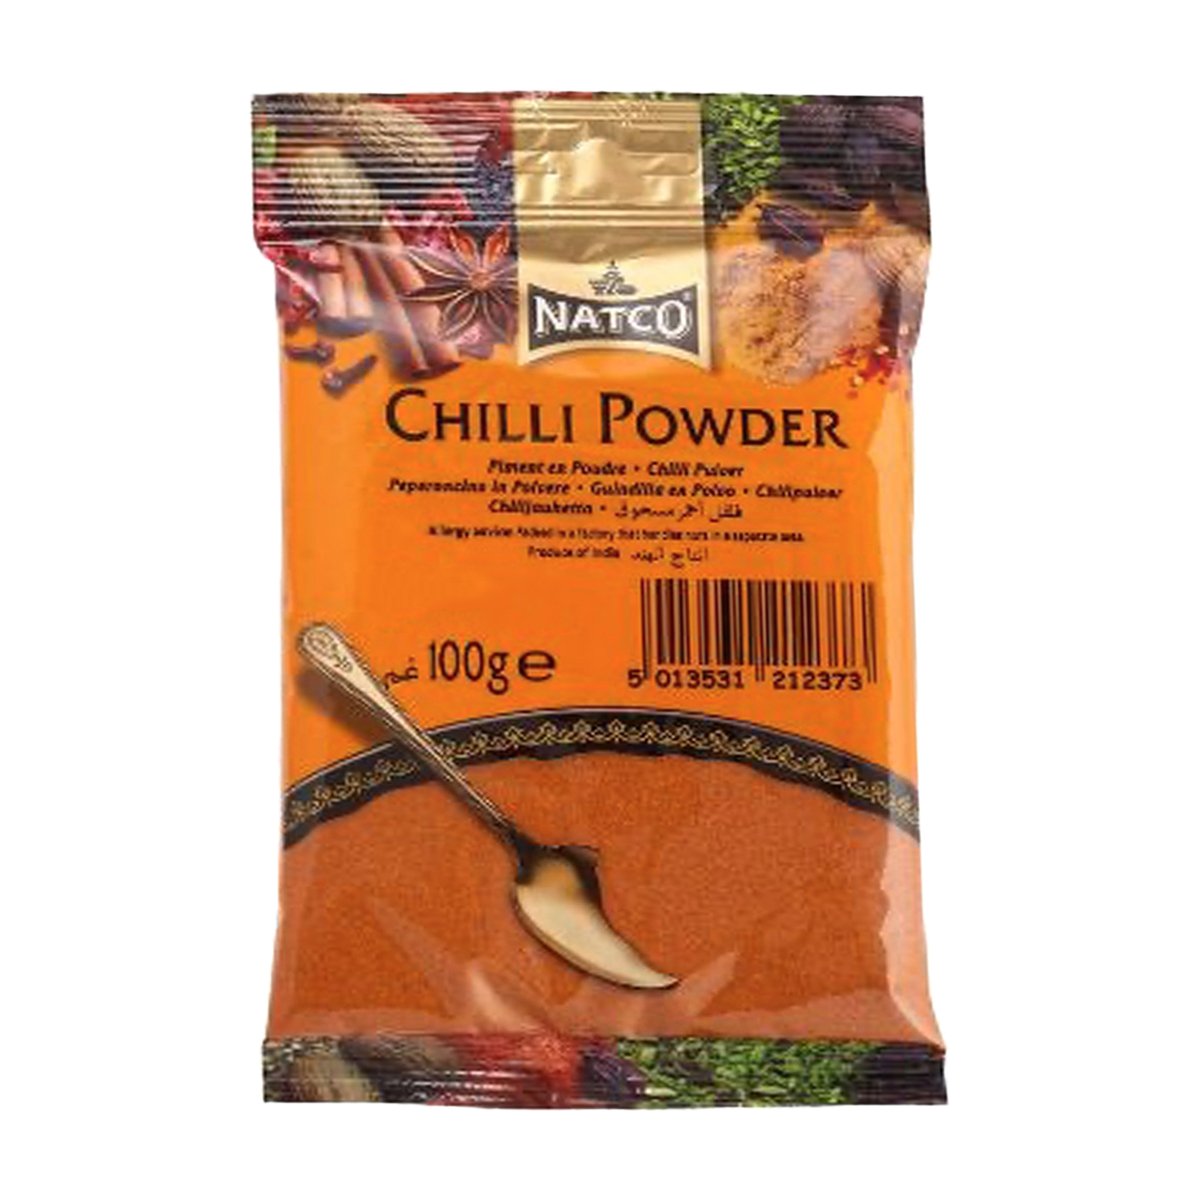 Natco Chilli Powder 100 g